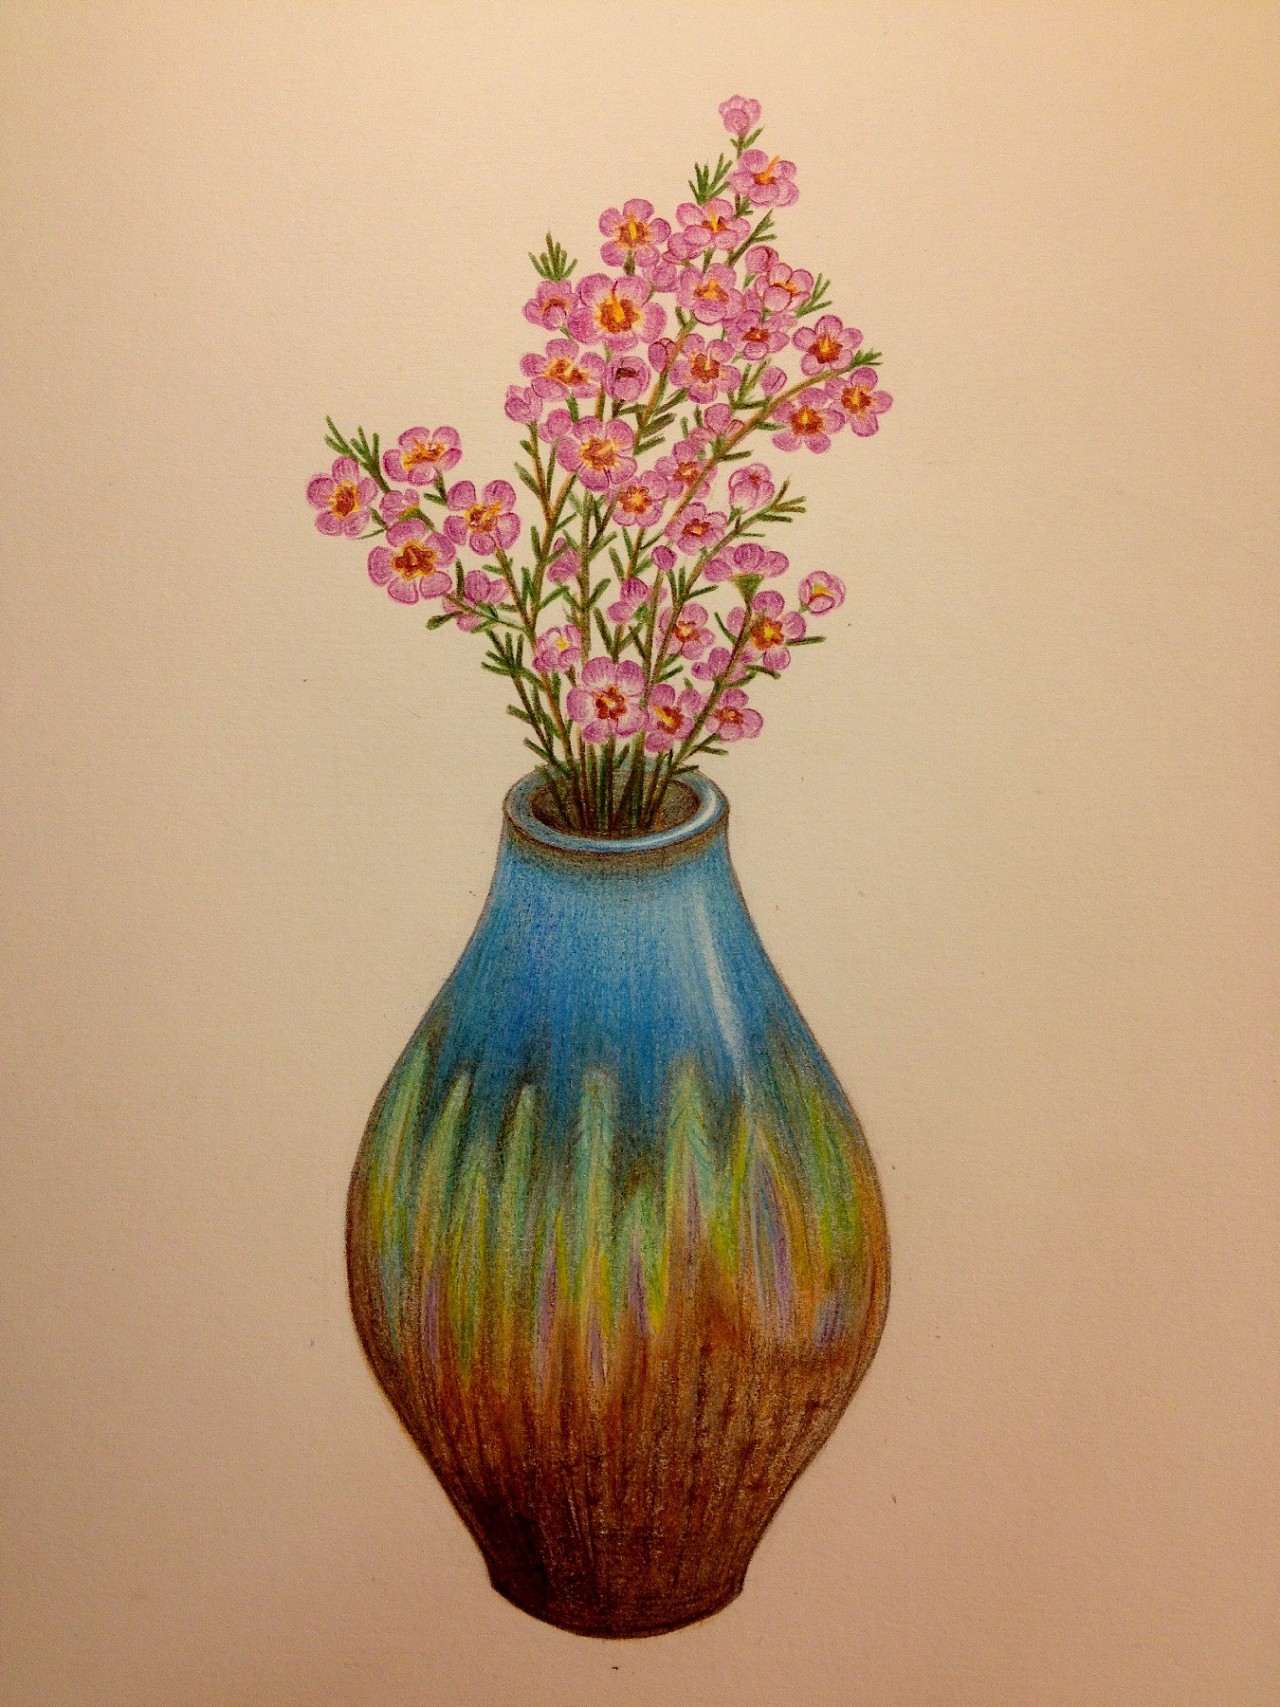 花瓶彩绘简单图片